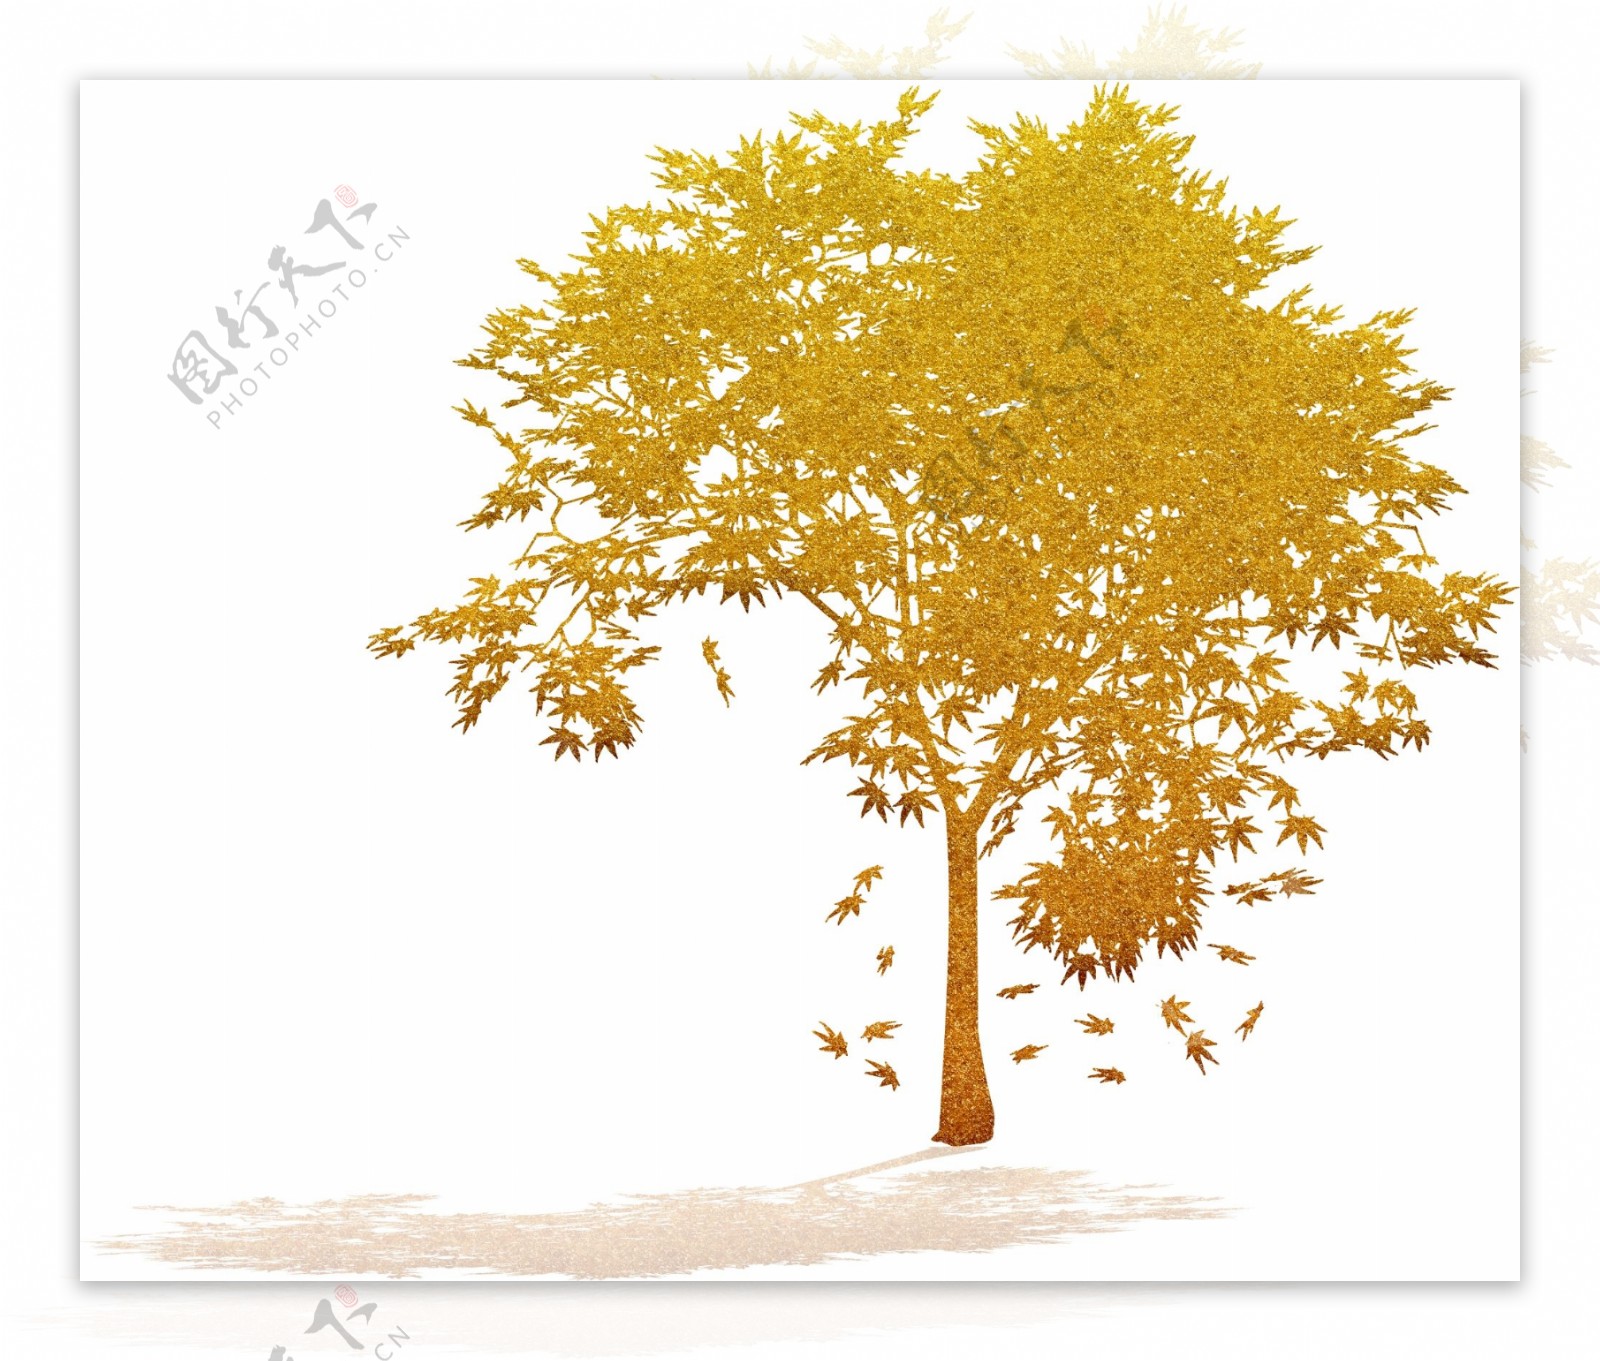 金色树木剪影